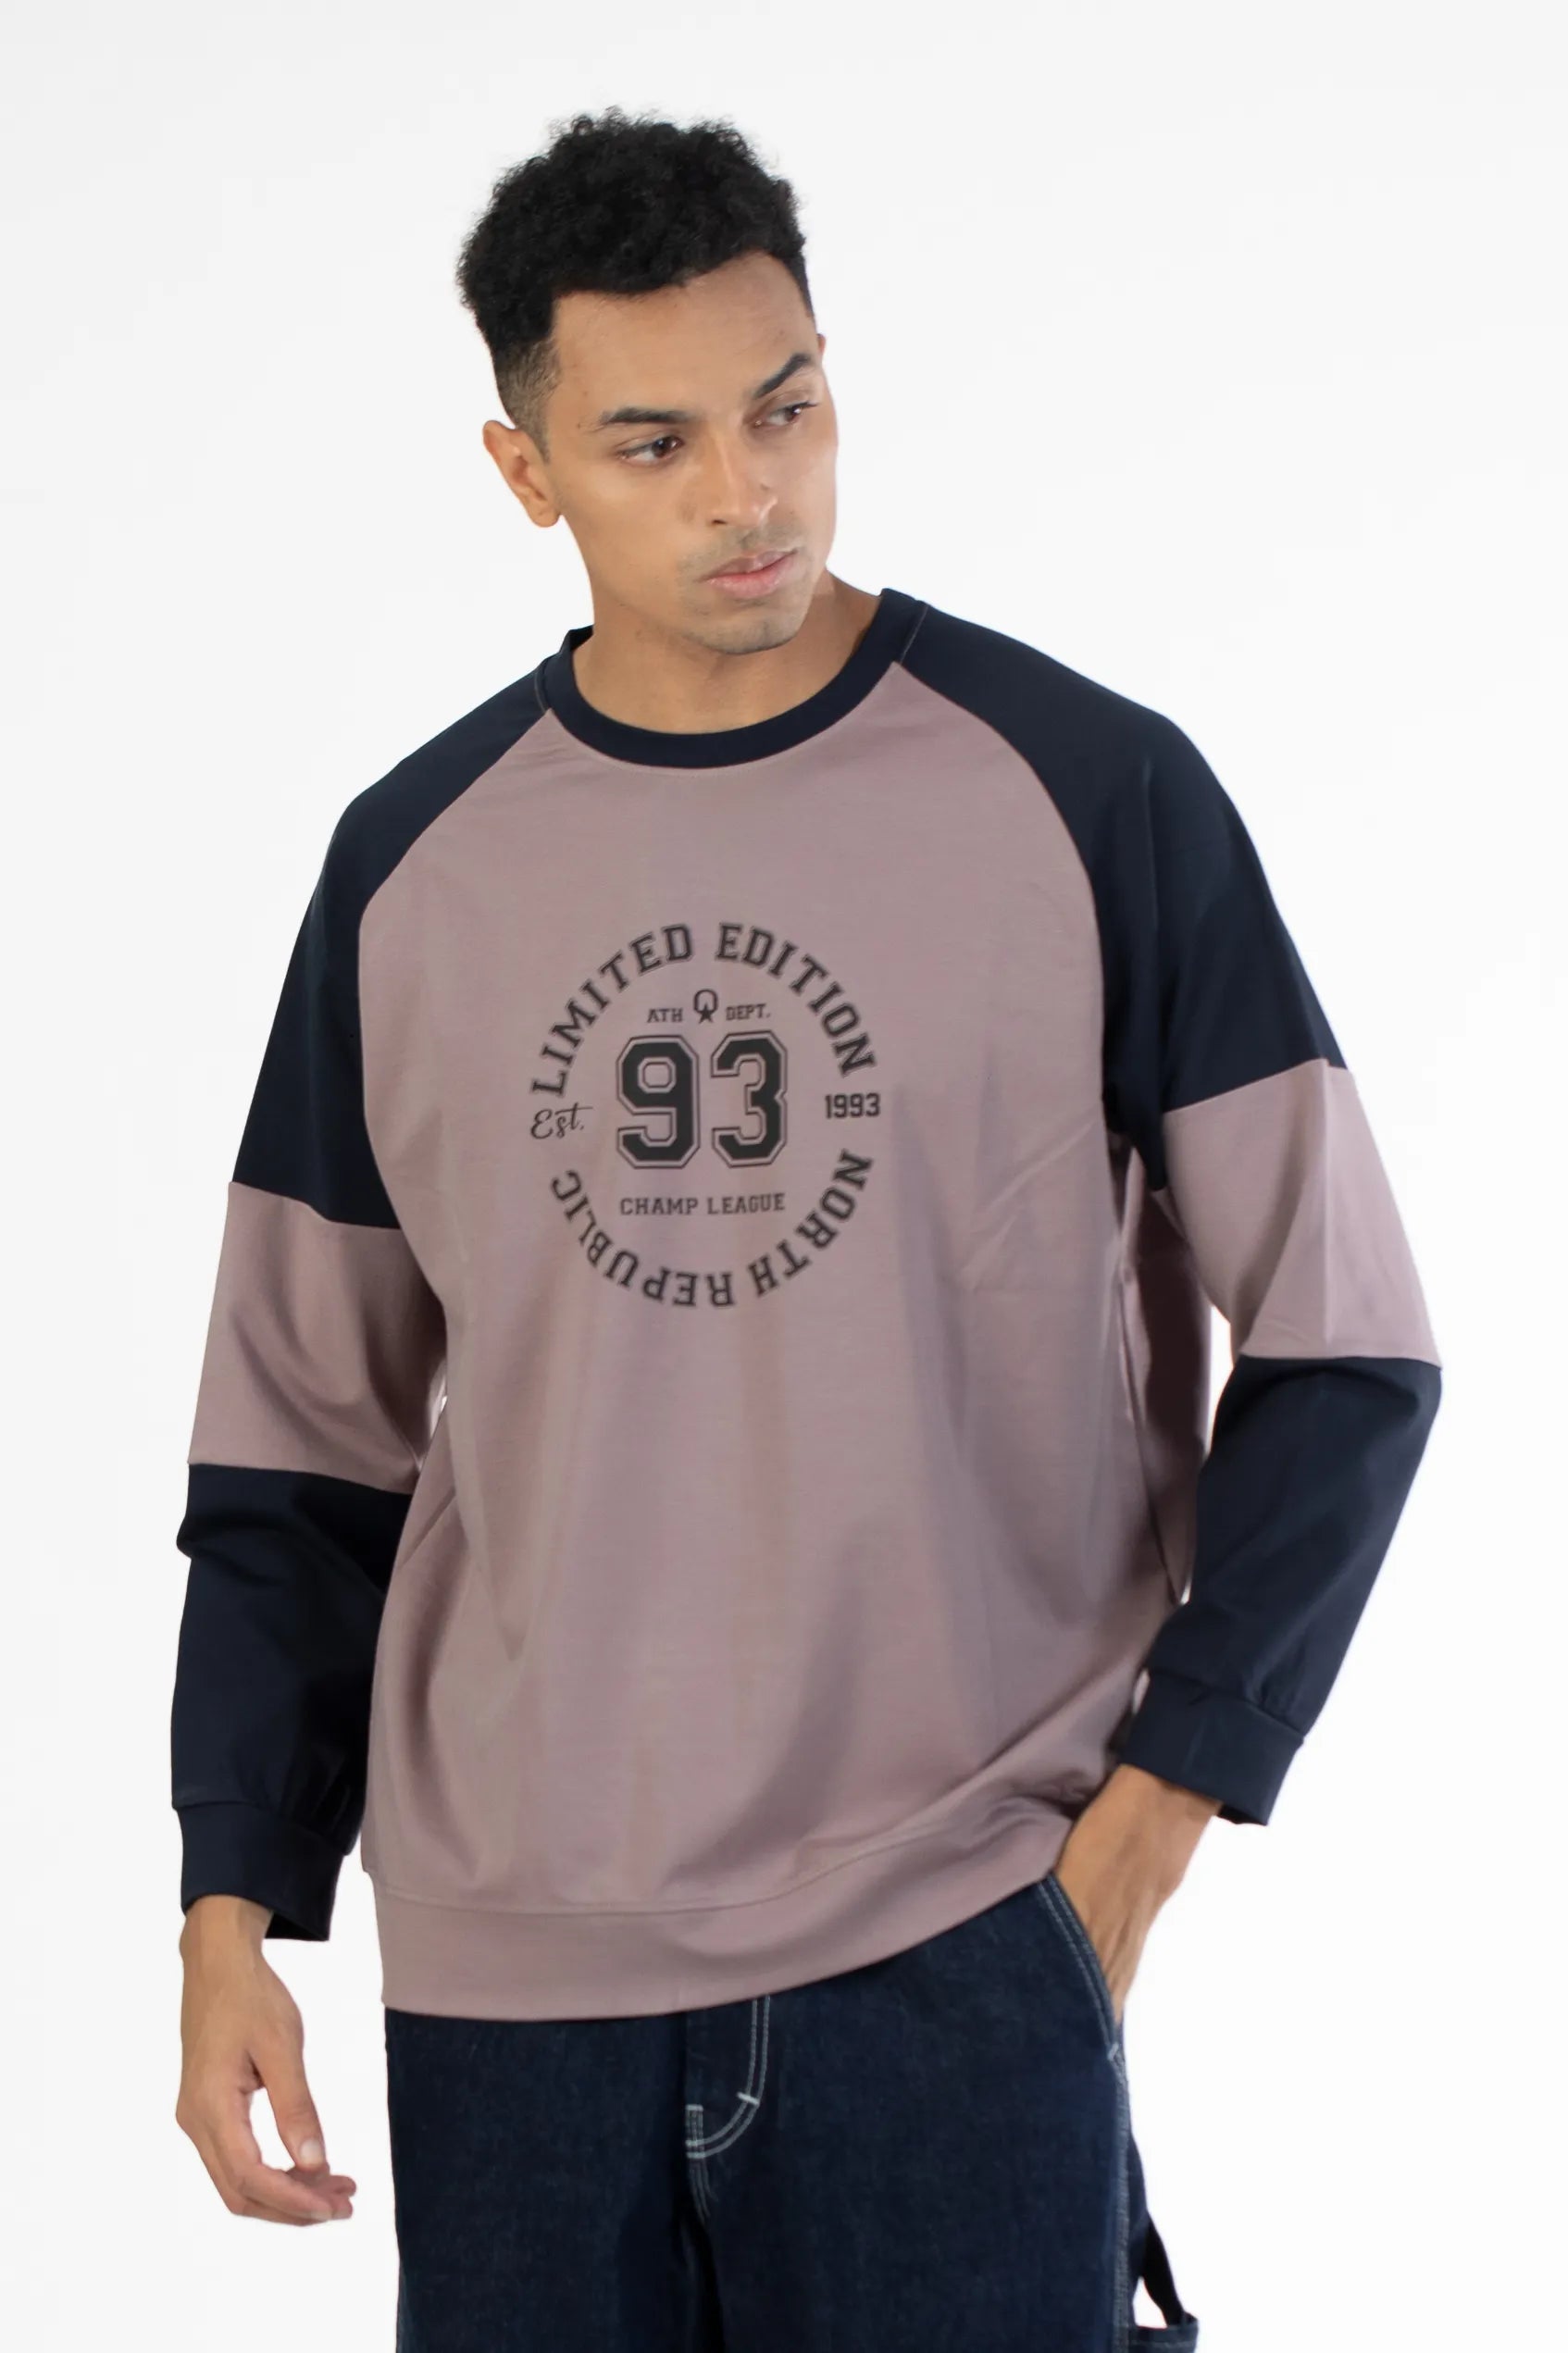 Buy Raglan Sleeve Graphic Printed Sweatshirt Online.